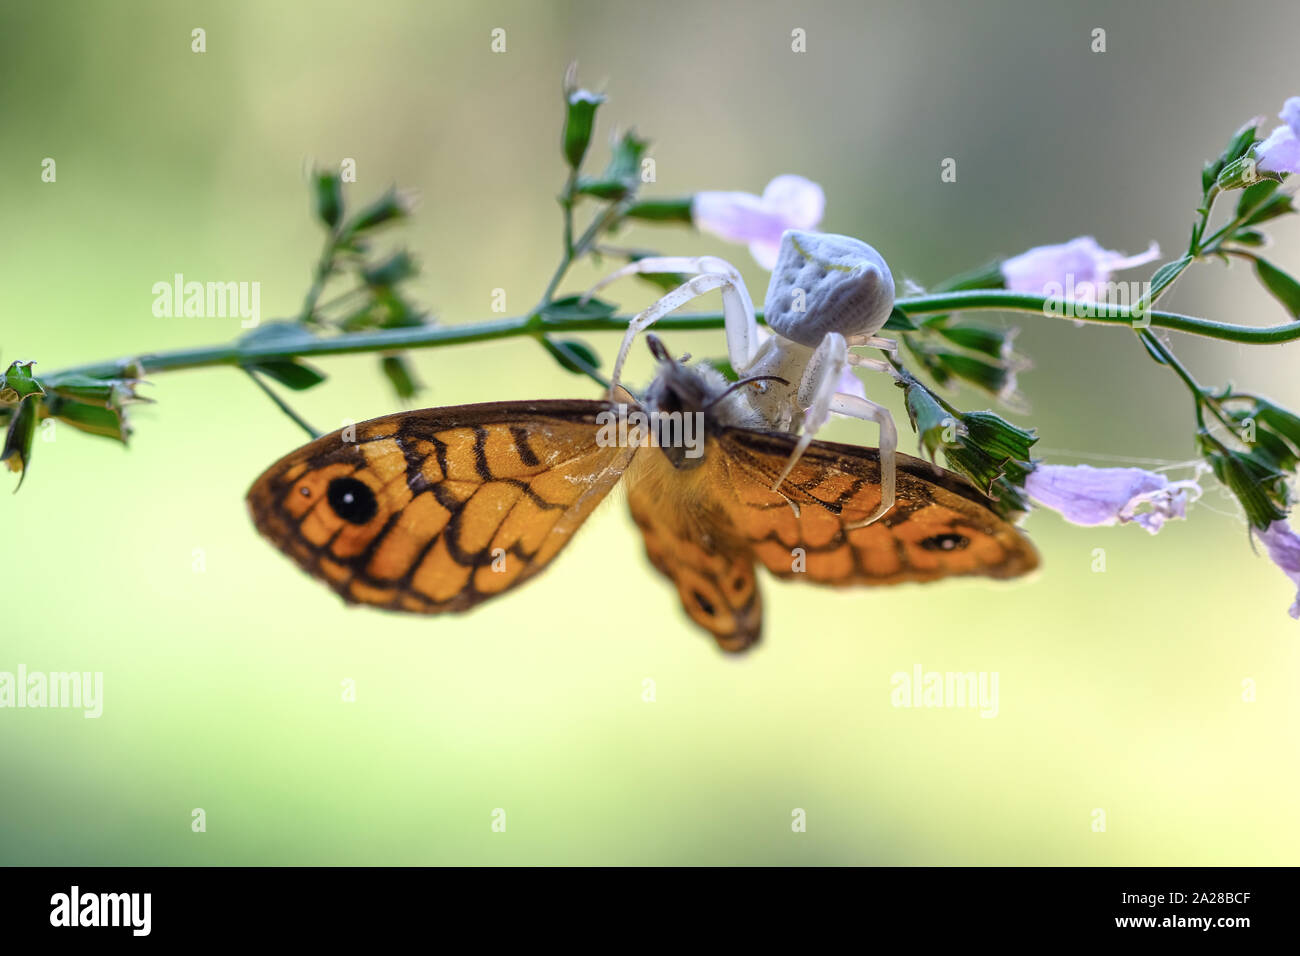 Wütend spinne Jagd Schmetterling in den wilden Pflanzen Ökosystem, insekt Tiere wildlife Stockfoto